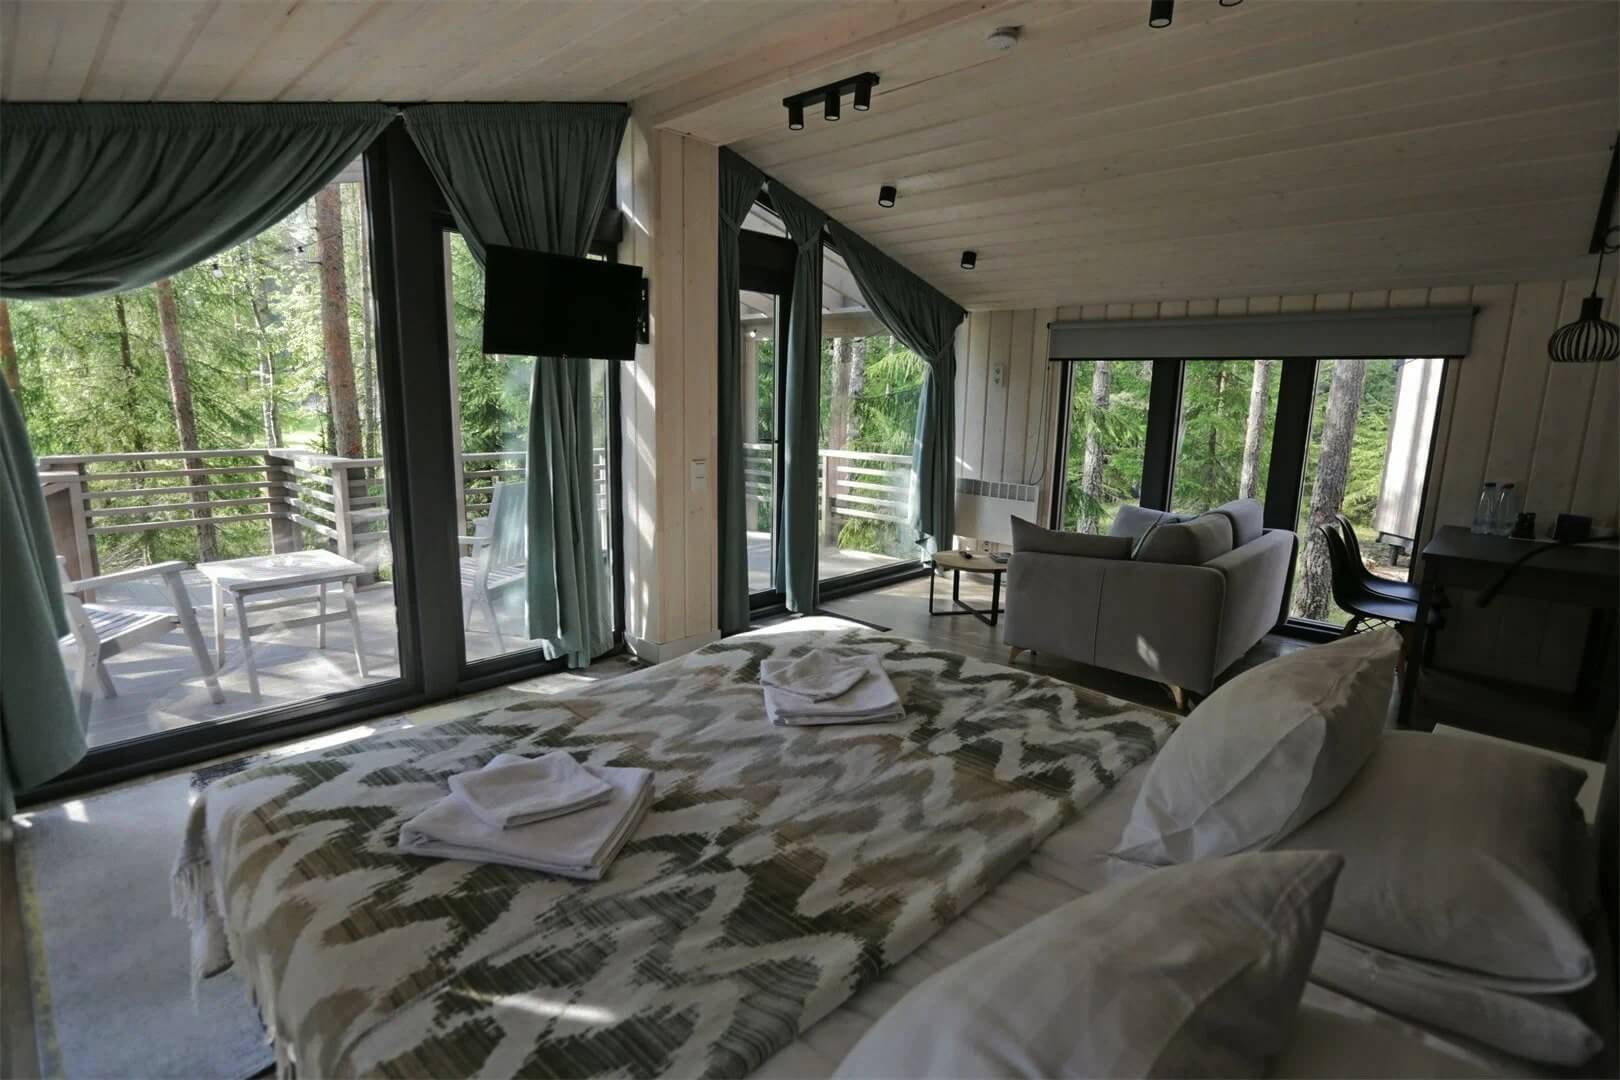 Большая, двуспальная кровать установлена напротив окна.